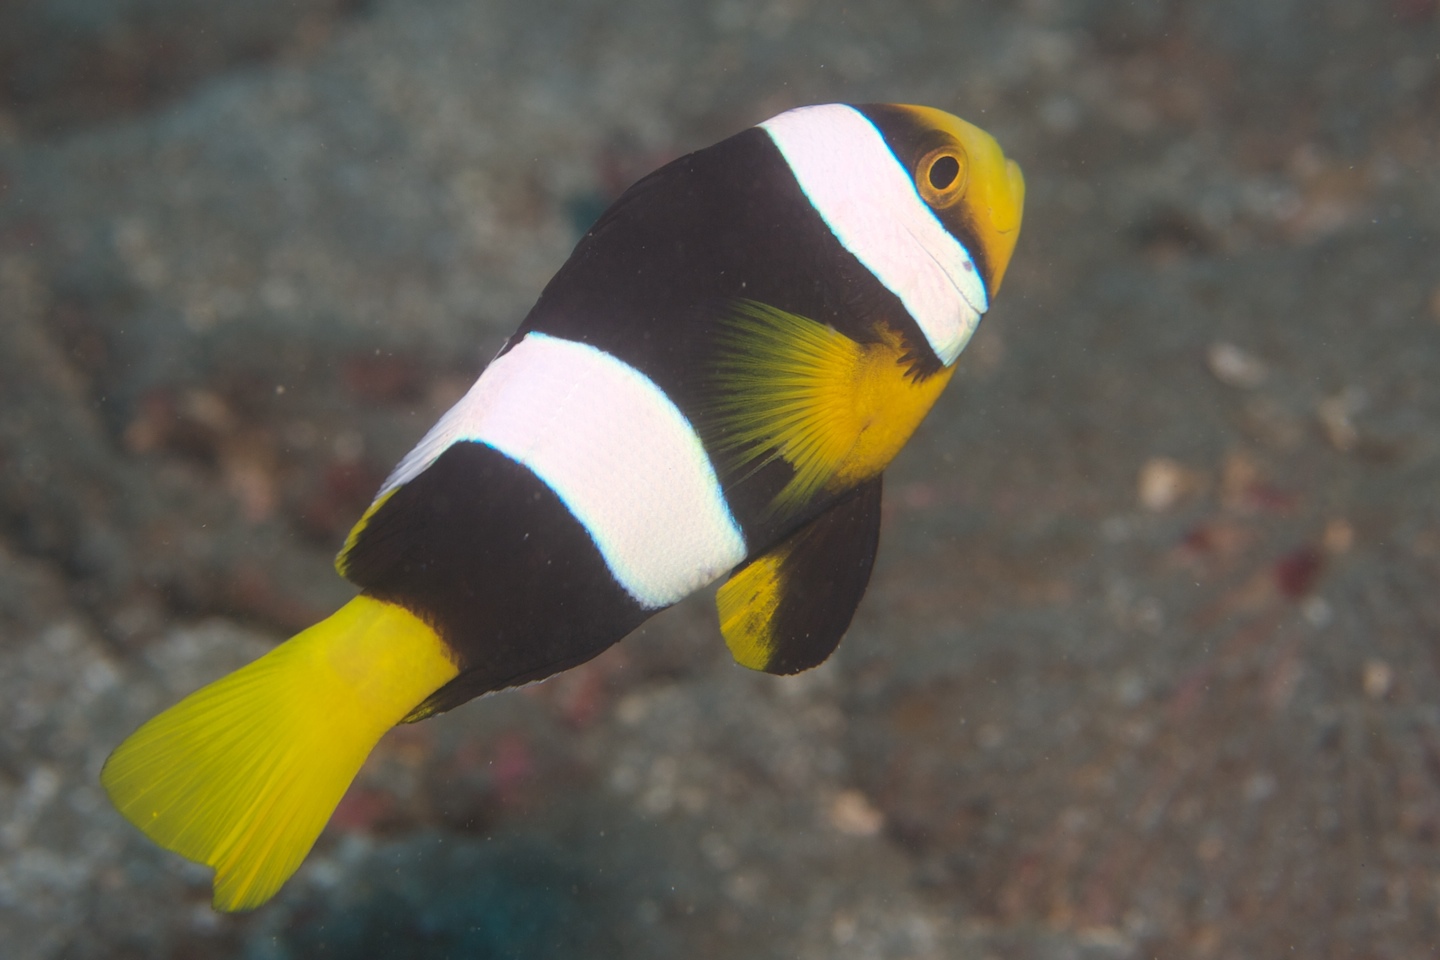 Sebae anemonefish